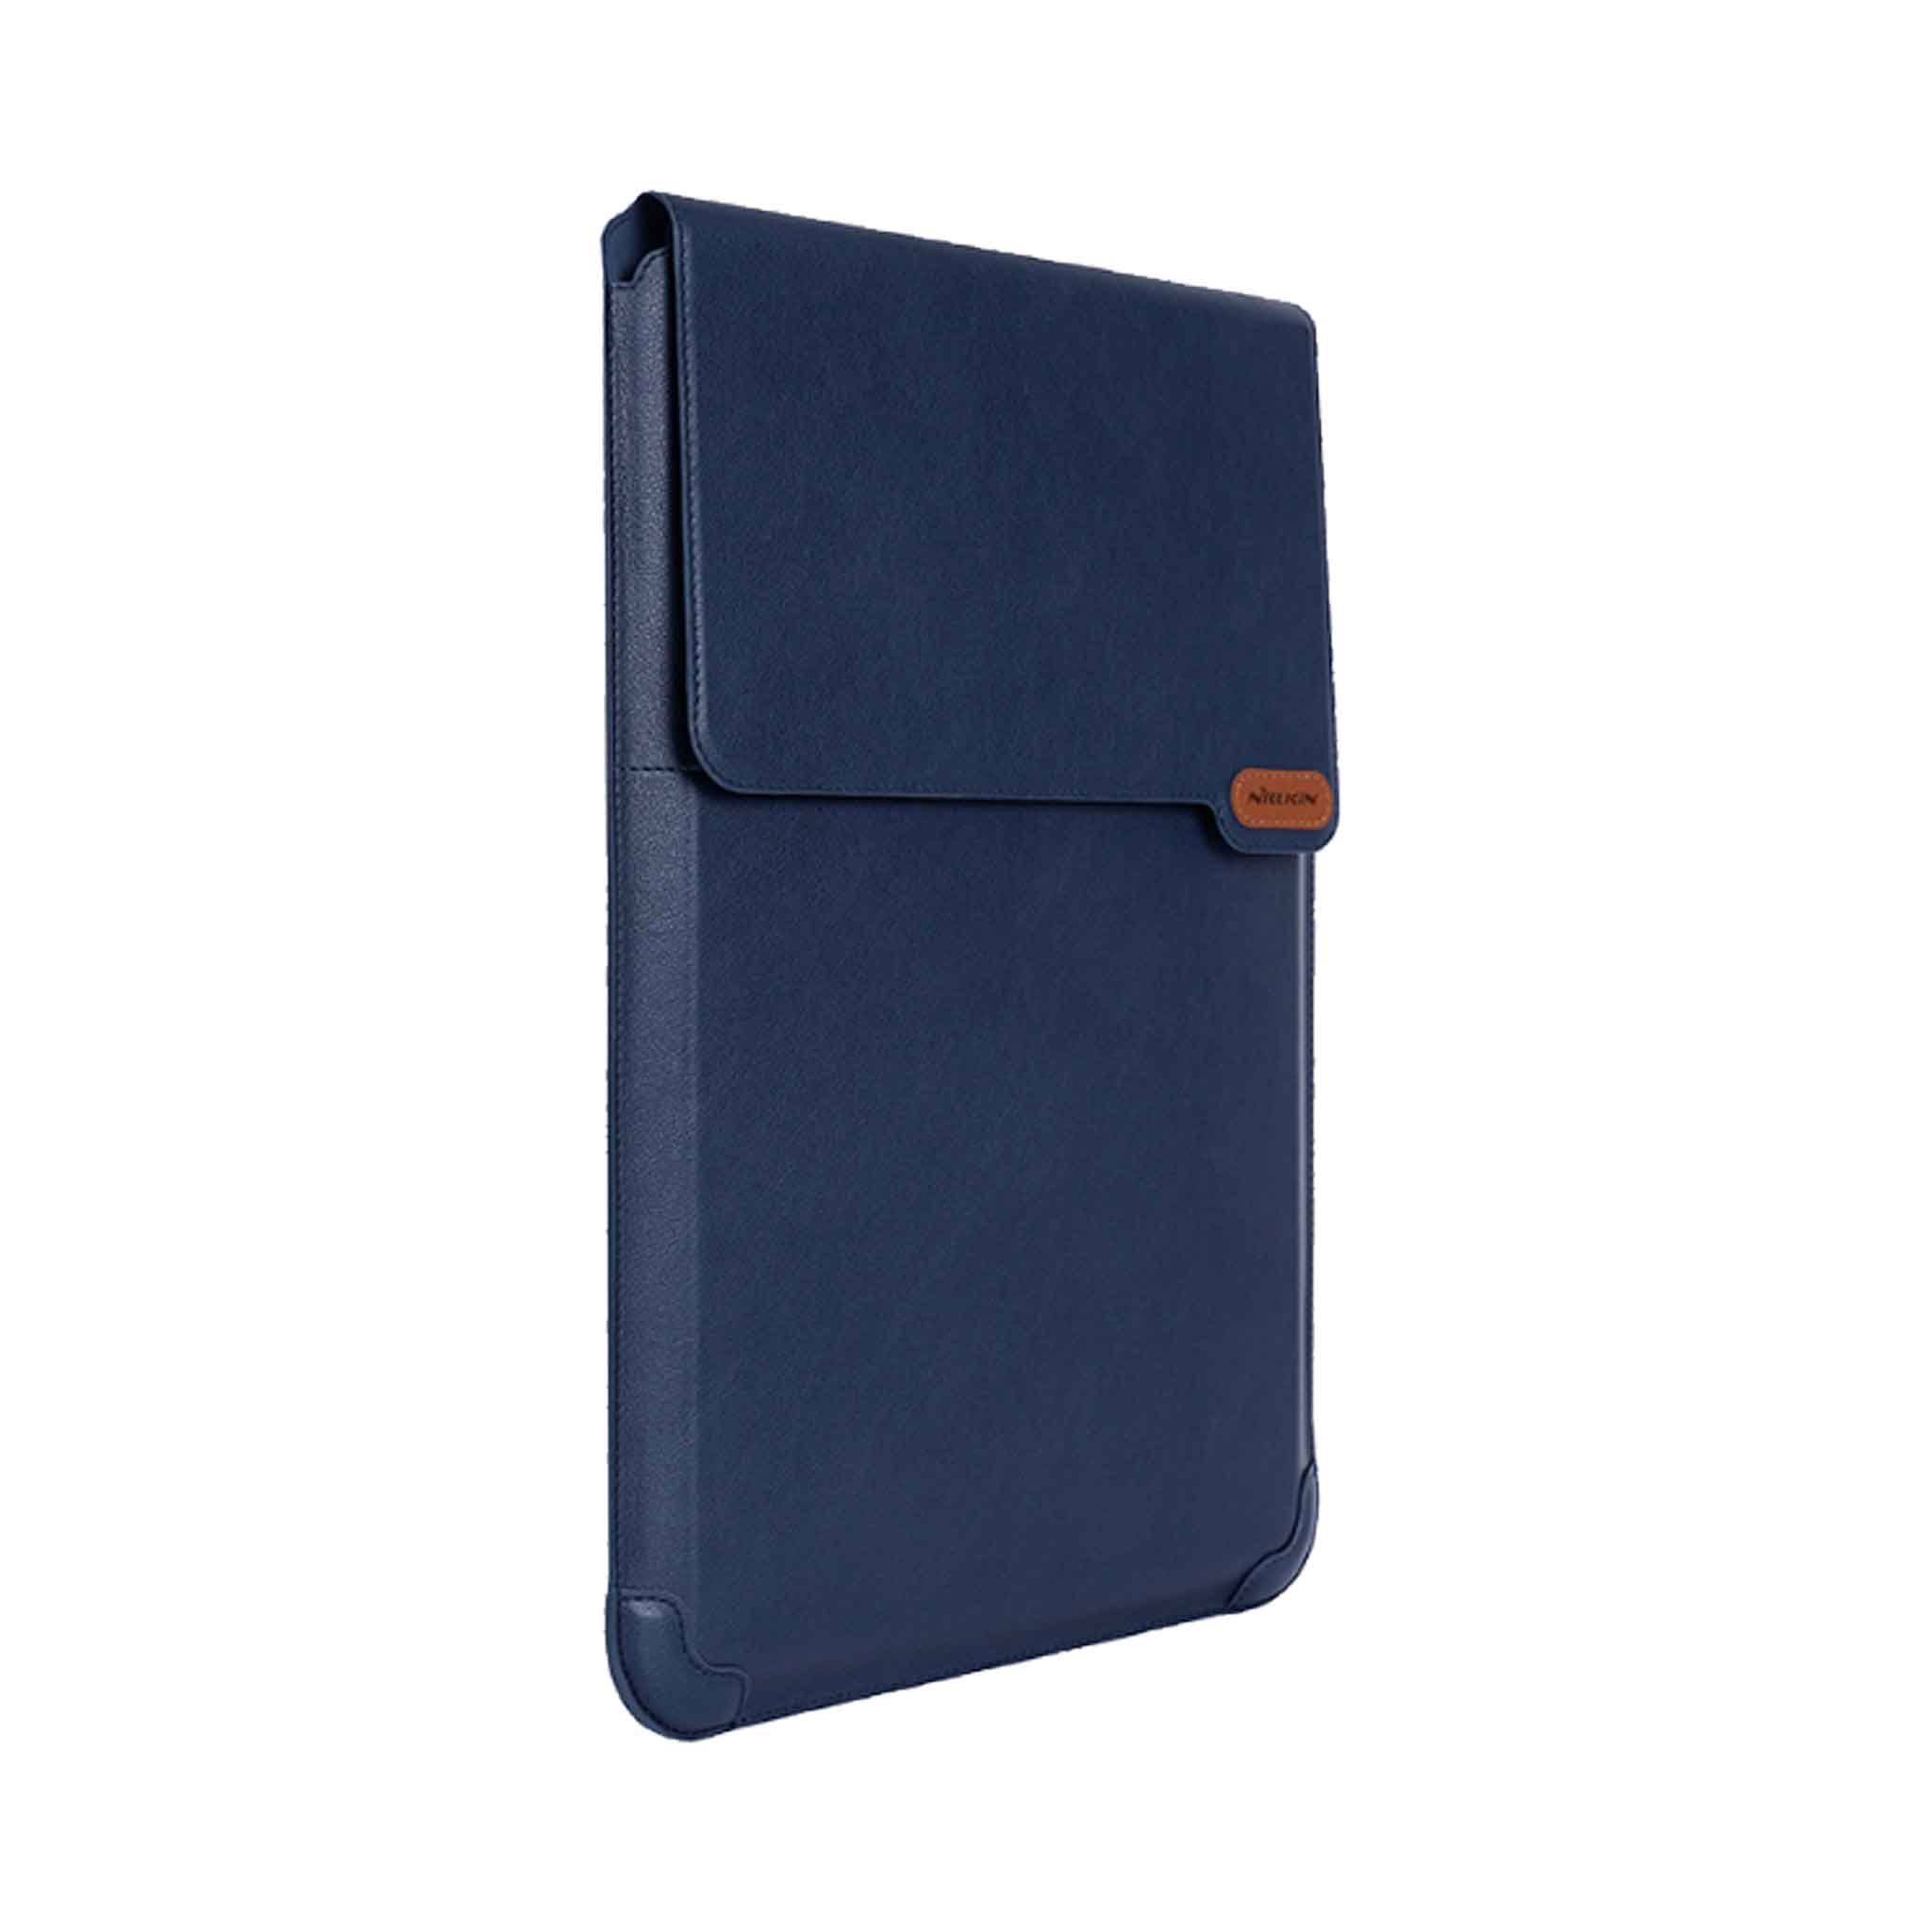 Notebook 14 inch / Deep Blue